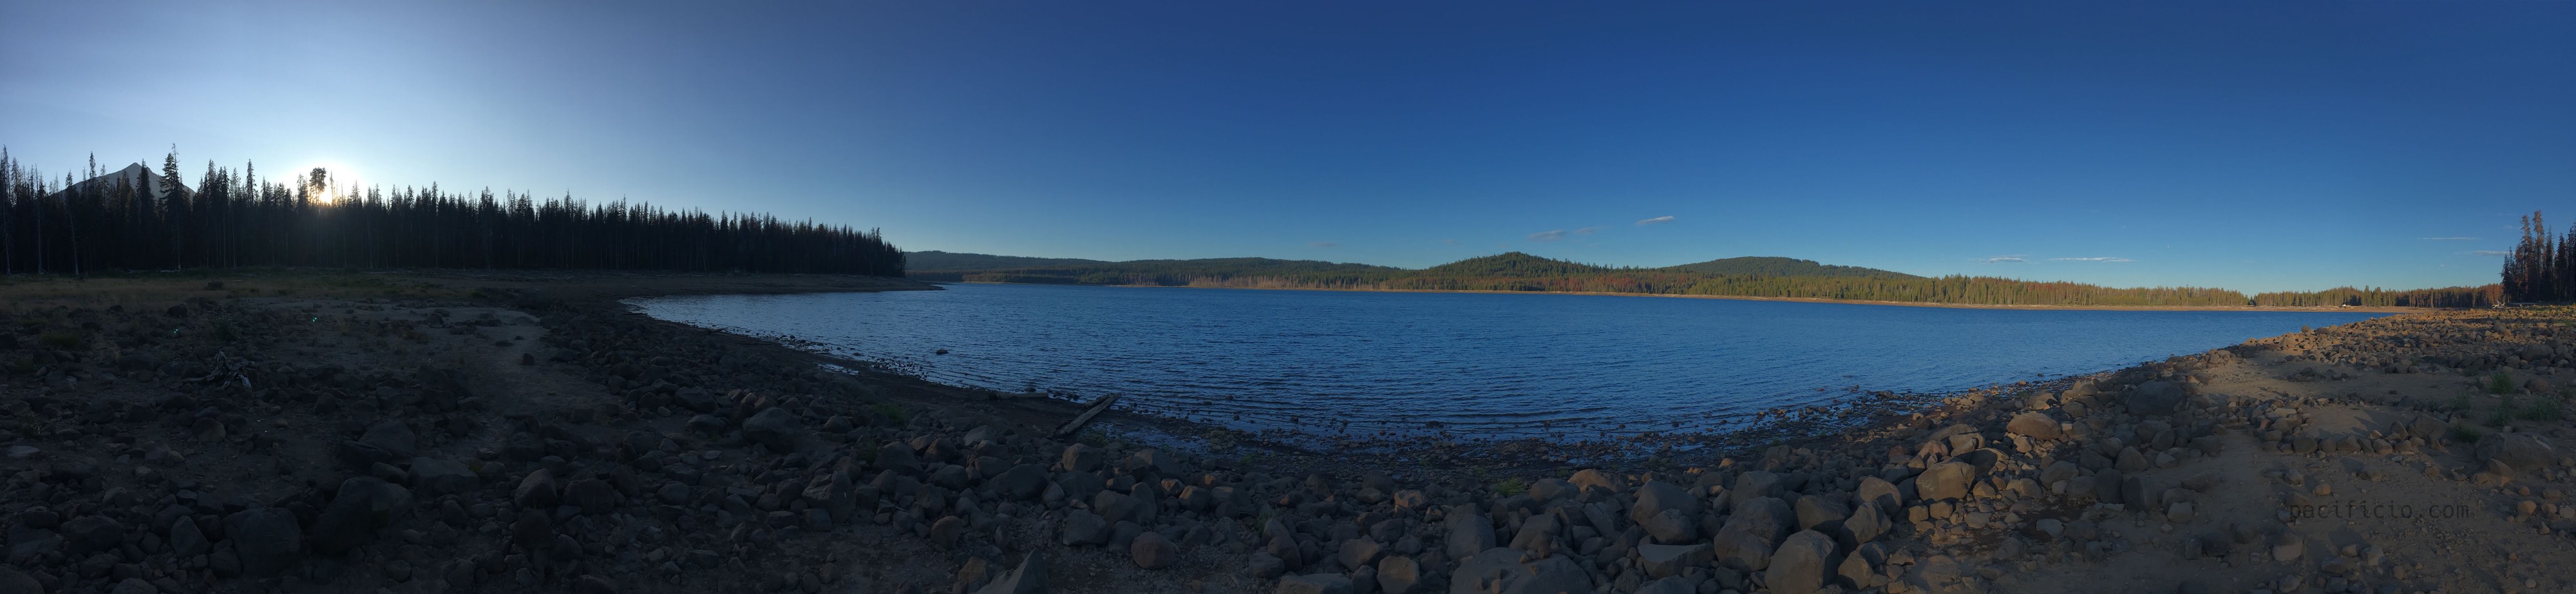 fourmile lake oregon and mt mcloughlin panorama